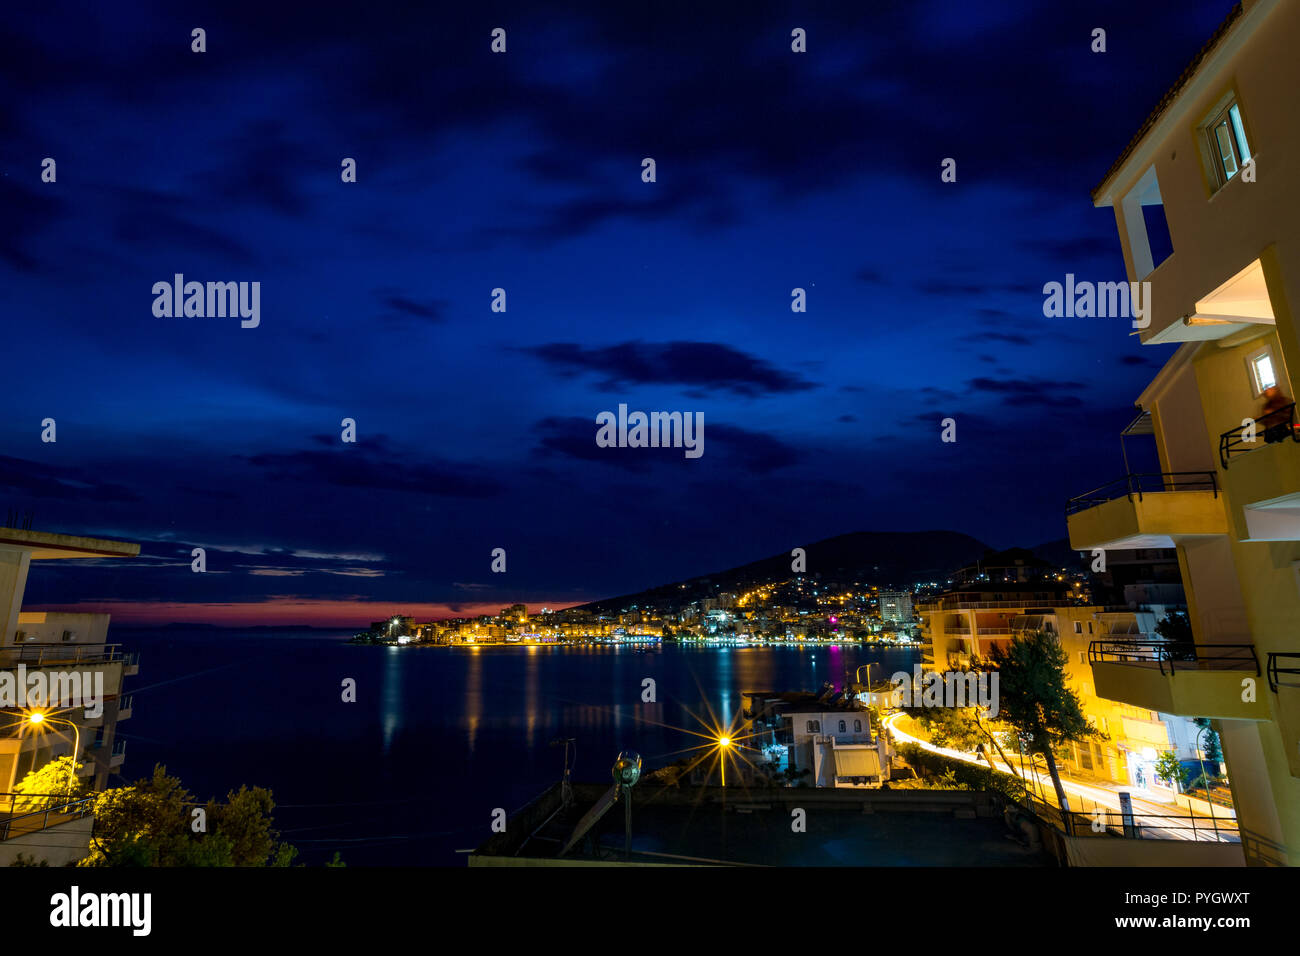 Langzeitbelichtung Nacht Landschaft Foto, stadtbild am schönen Meer Stadt Saranda, Albanien mit Stern Effekt auf die Lichter der Stadt und Meer Wasser Reflexionen Stockfoto